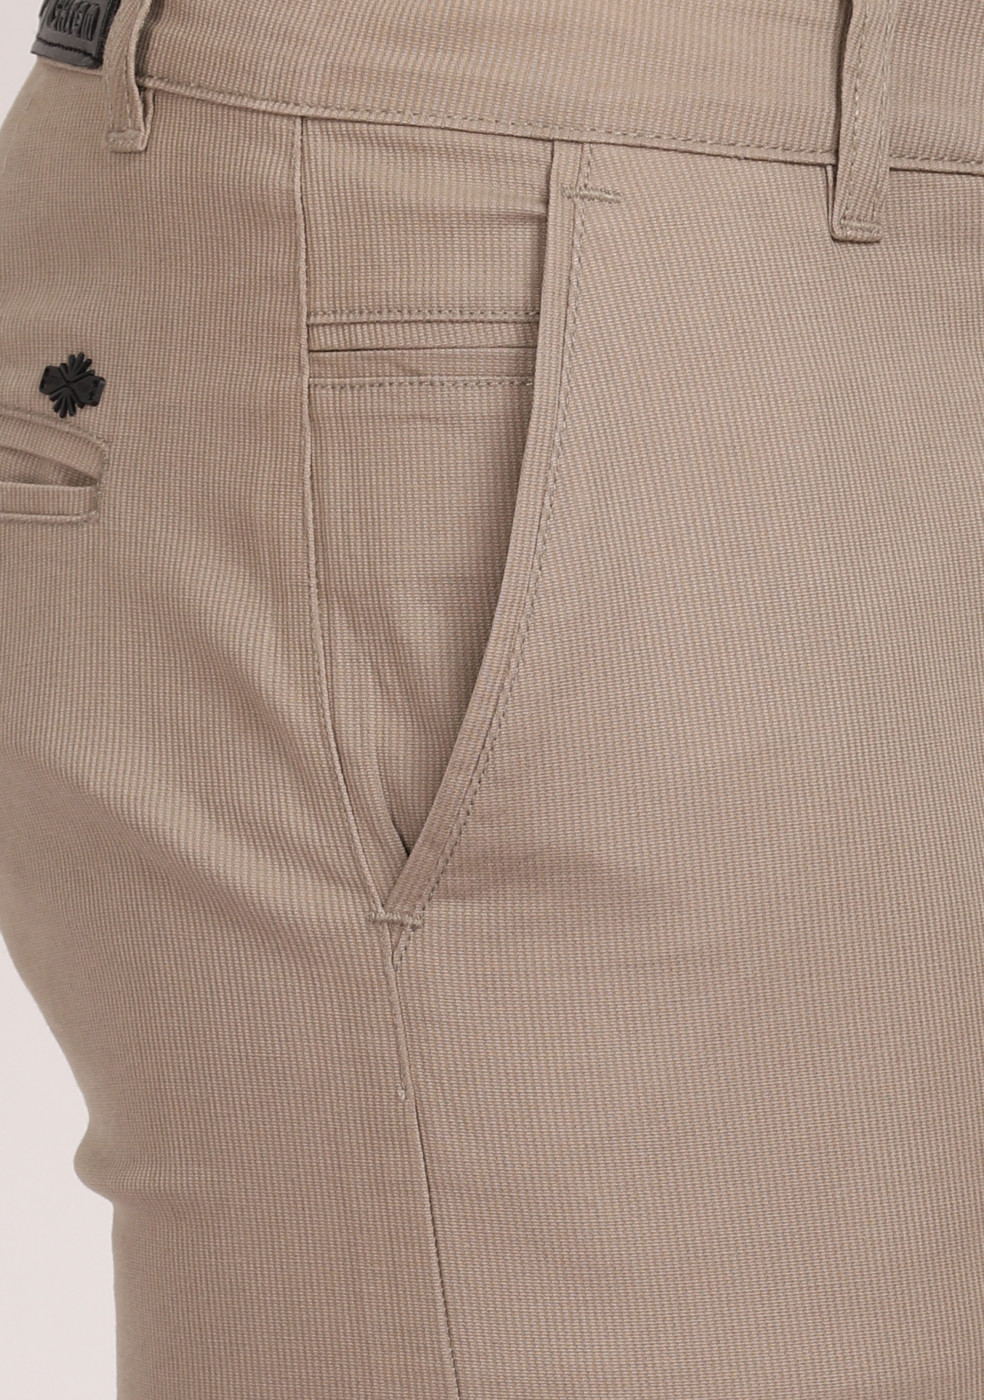 ASHTOM Gray Formal Cotton Trouser Regular Fit For Men